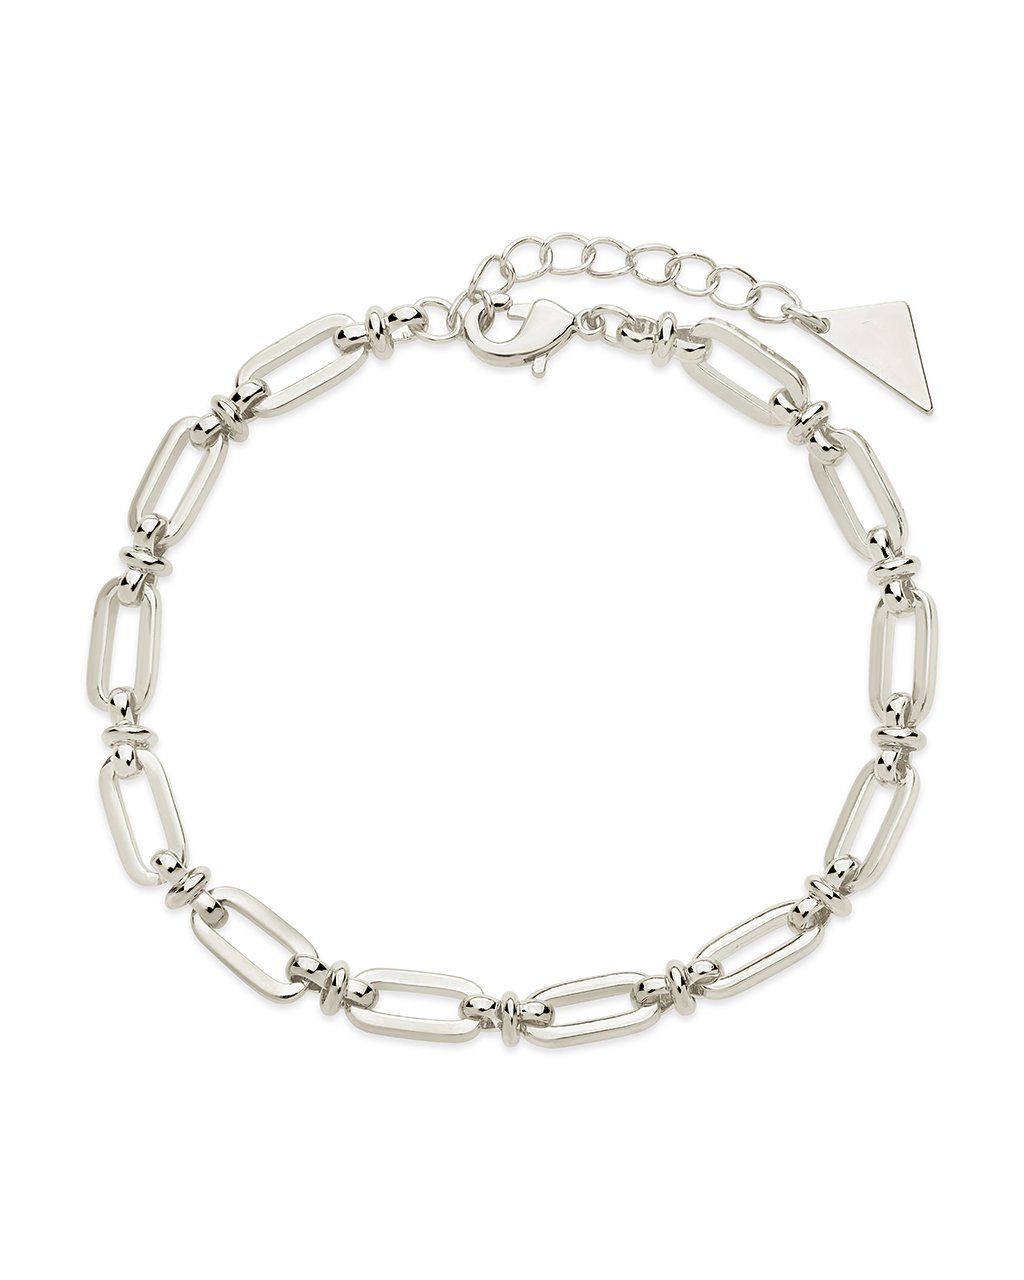 Oval Link Chain Bracelet Bracelet Sterling Forever Silver 